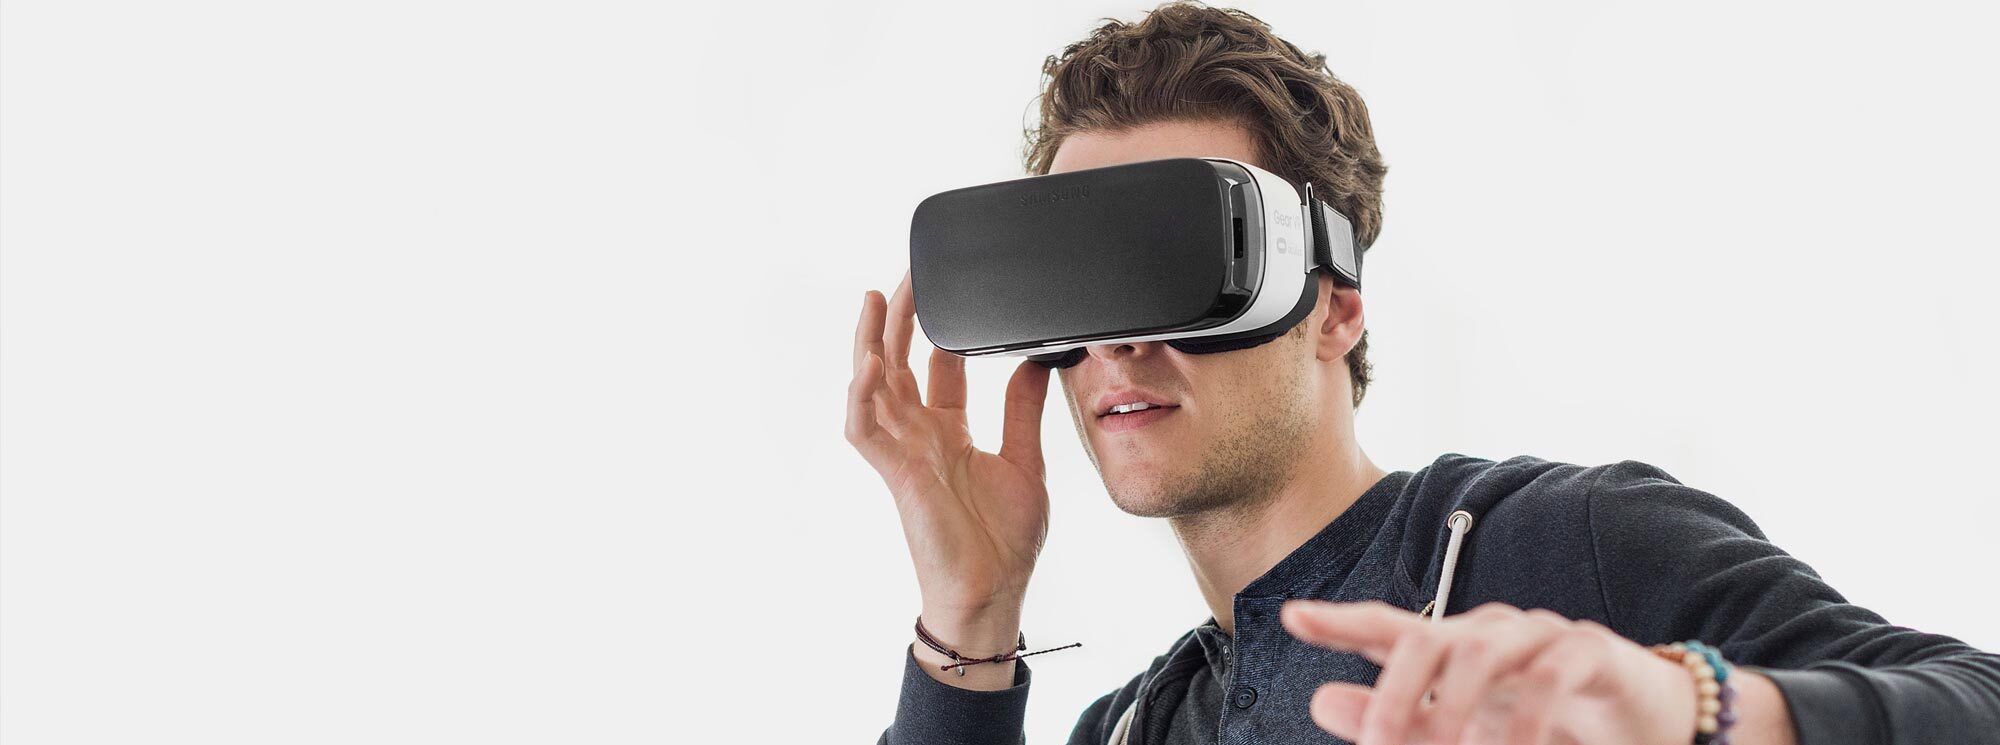 Get vr. VR фотосъемка. VR режим. Видео очки высокого разрешения. VR-тур для журналистов.